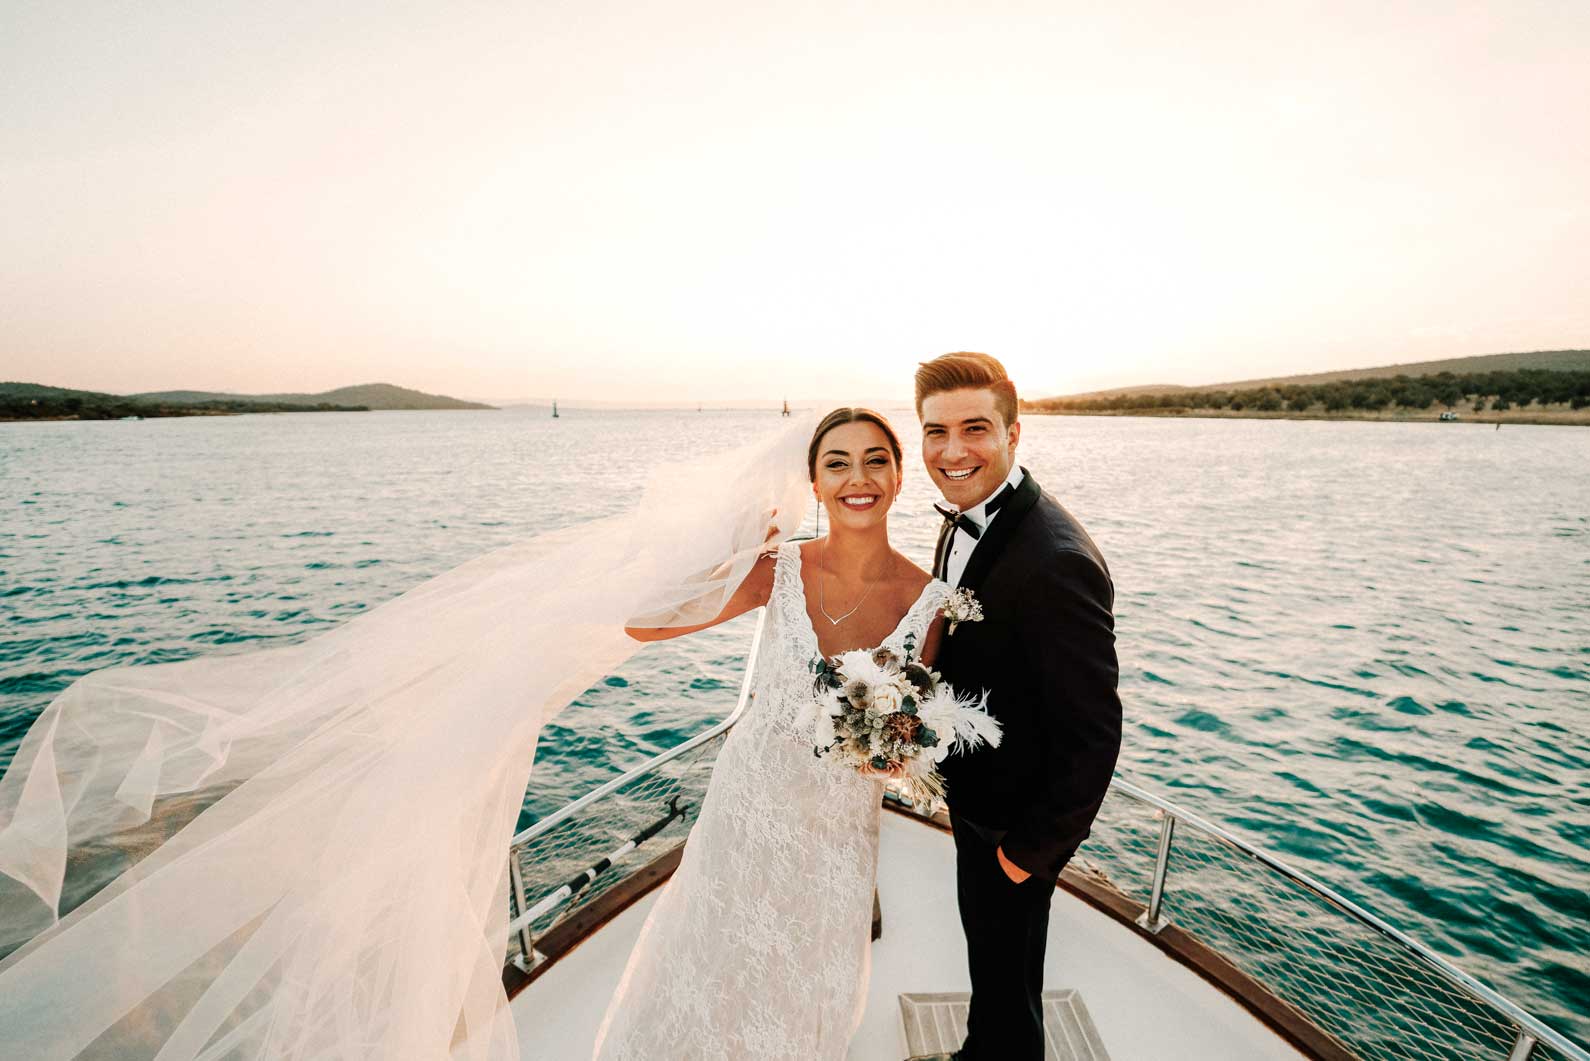 İzmir düğün hikayesi,en güzel düğün videoları,en güzel düğün hikayeleri,belgesel düğün videoları,düğün hikayesi fiyatları,düğün klibi,wedding story,düğün hikayesi nedir,eğlenceli düğün klibi,düğün hikayesi müzikleri,düğün kısa film